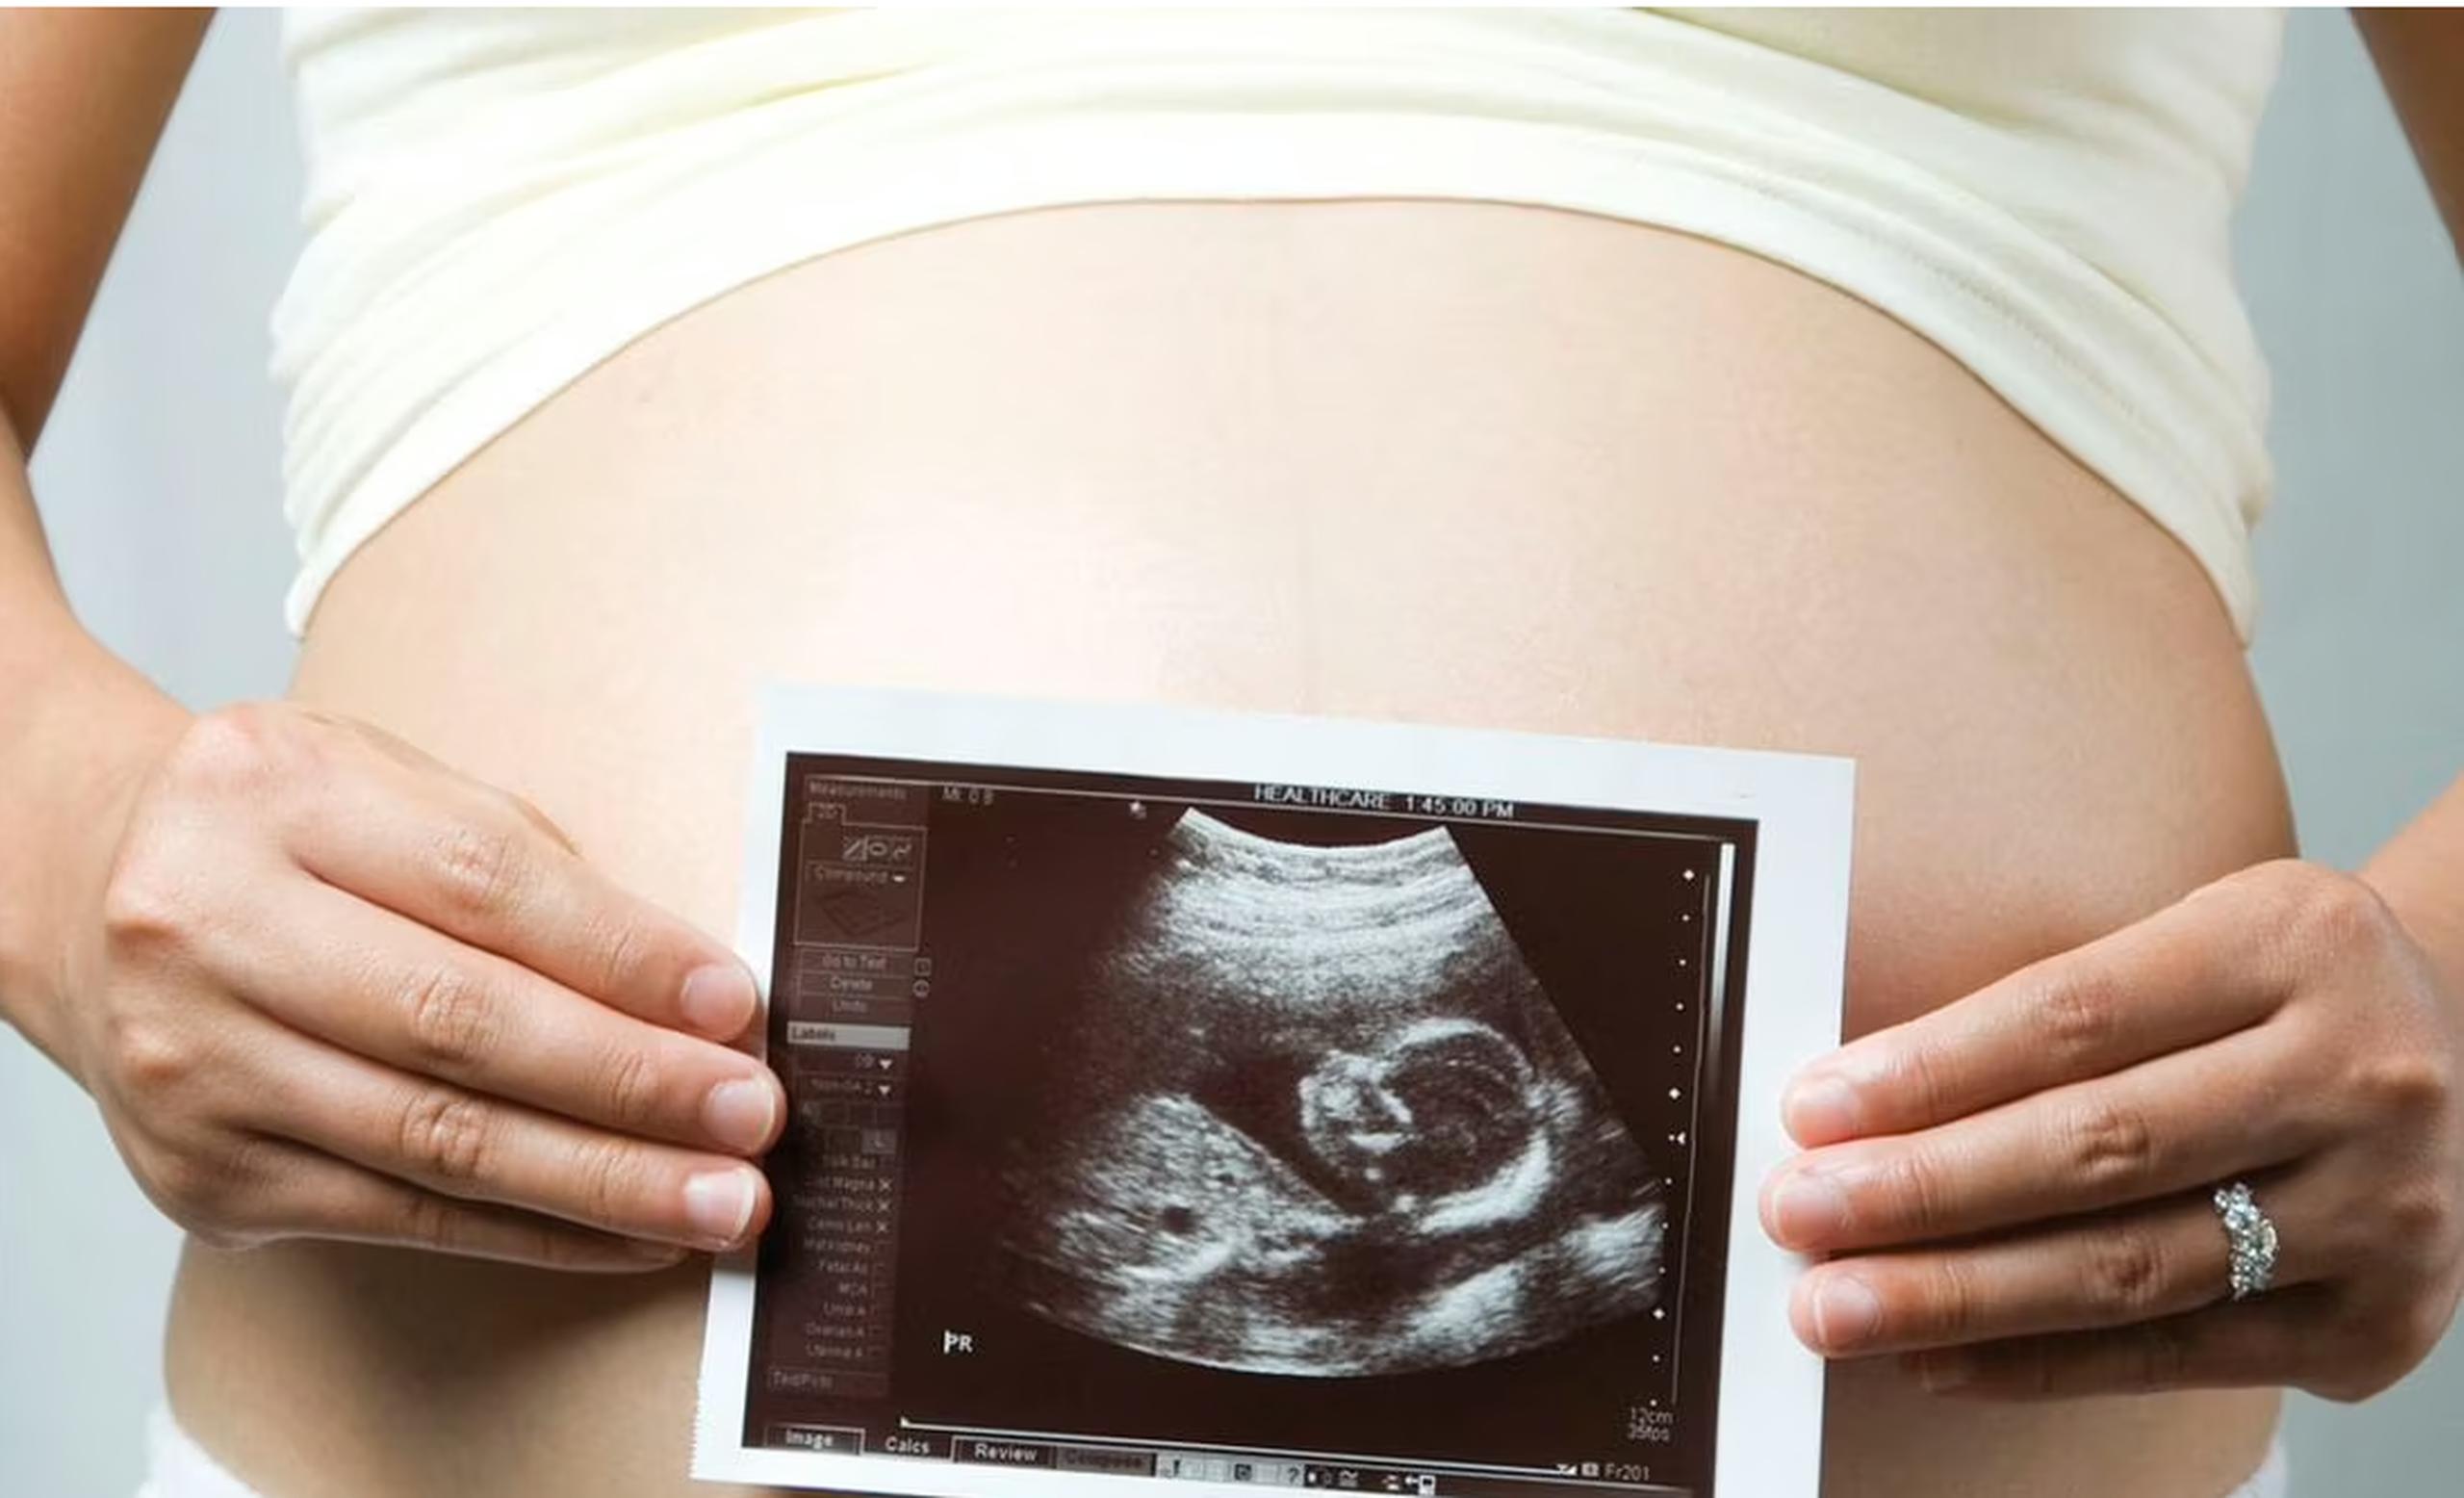 La edad puede ser un factor de riesgo muy común que provoque un embarazo de alto riesgo.